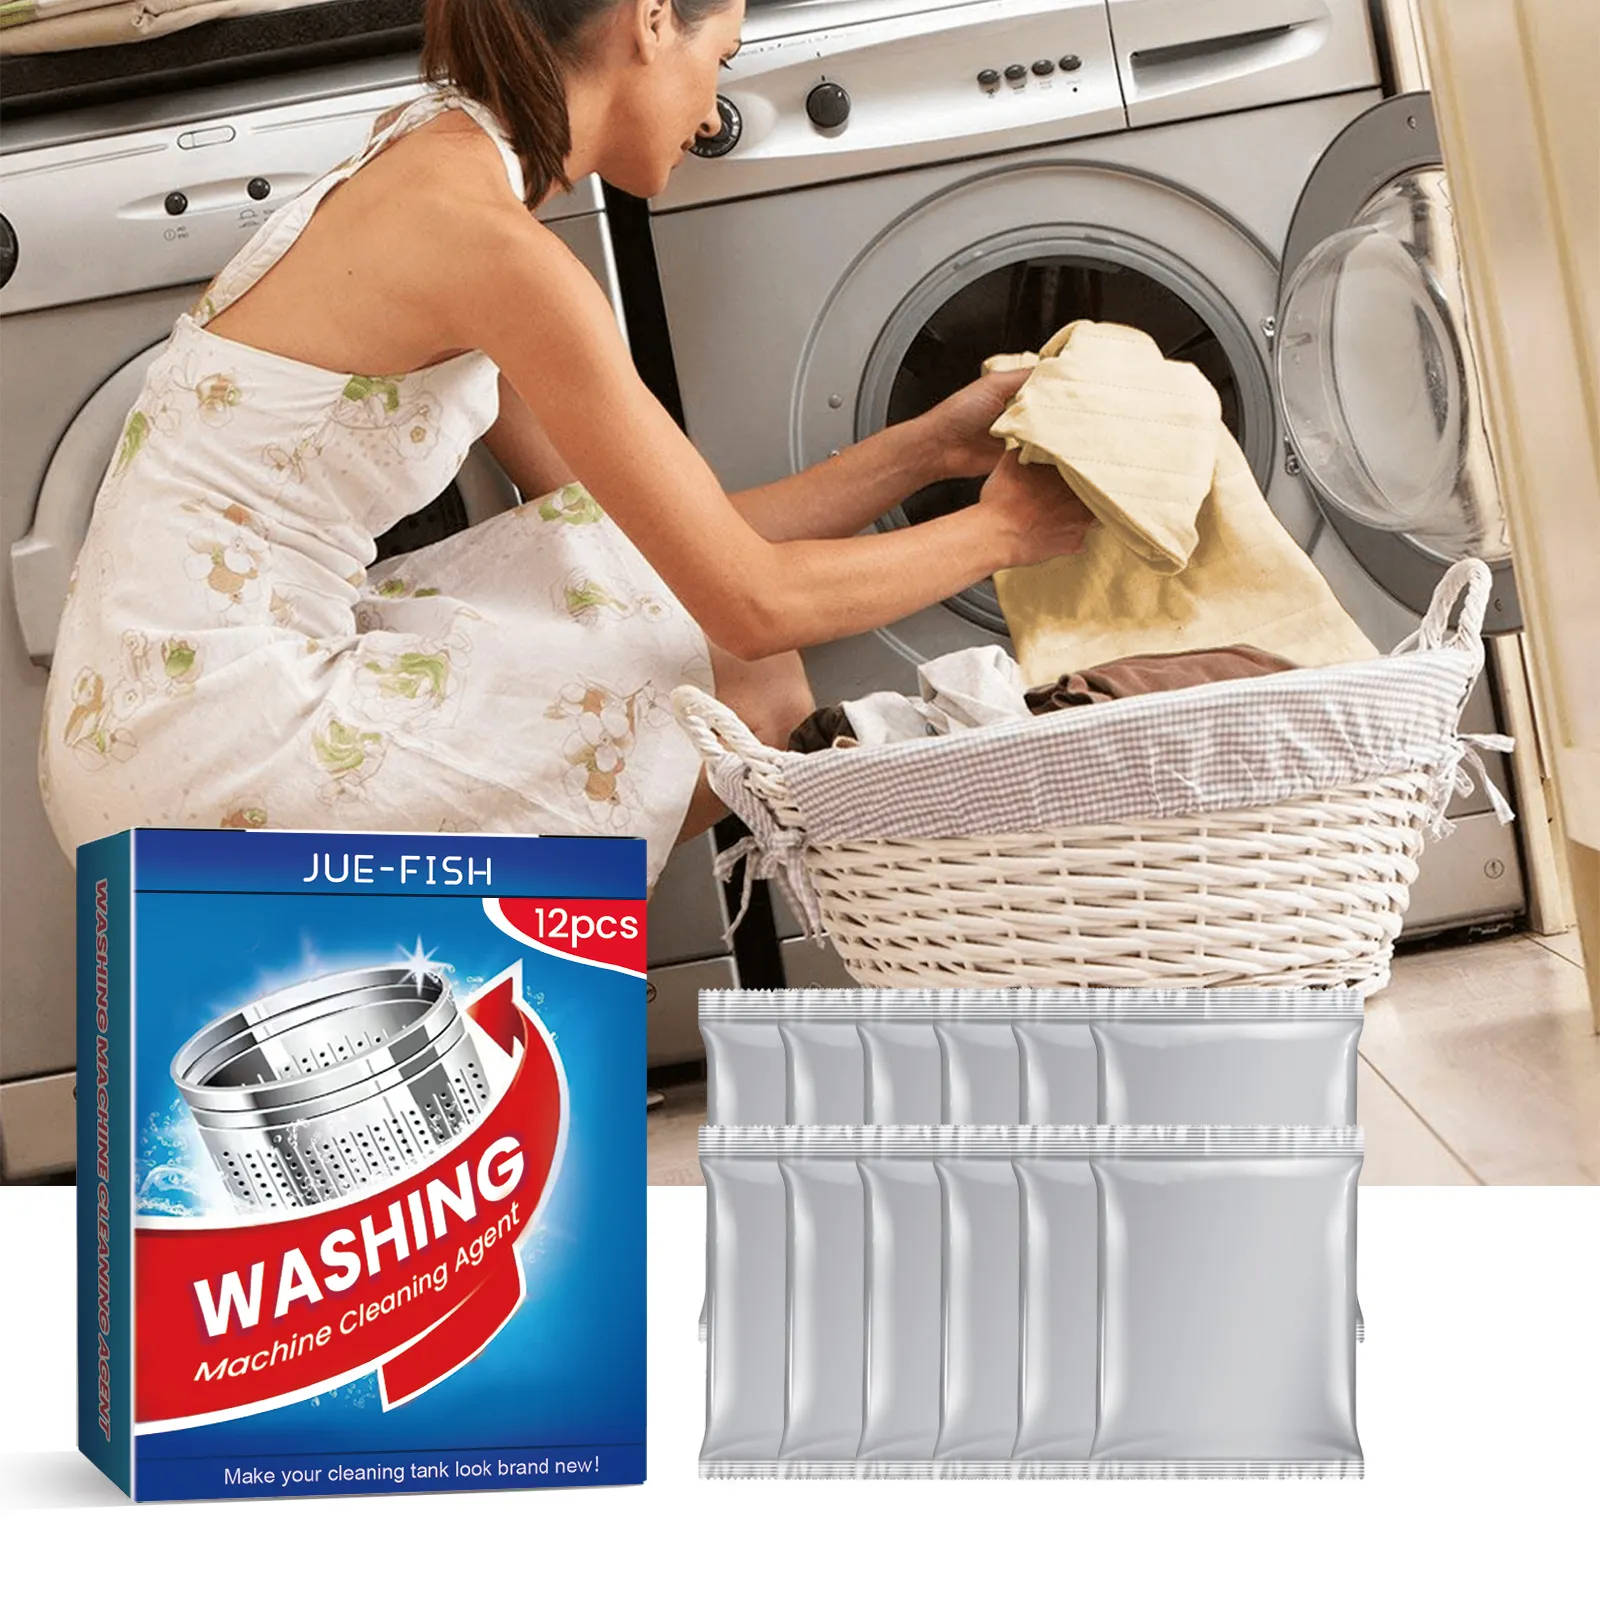 สารทำความสะอาดถังเครื่องซักผ้าผงซักฟอกในครัวเรือนกำจัดเชื้อราที่มีประสิทธิภาพสำหรับน้ำยาลดแรงตึงผิว